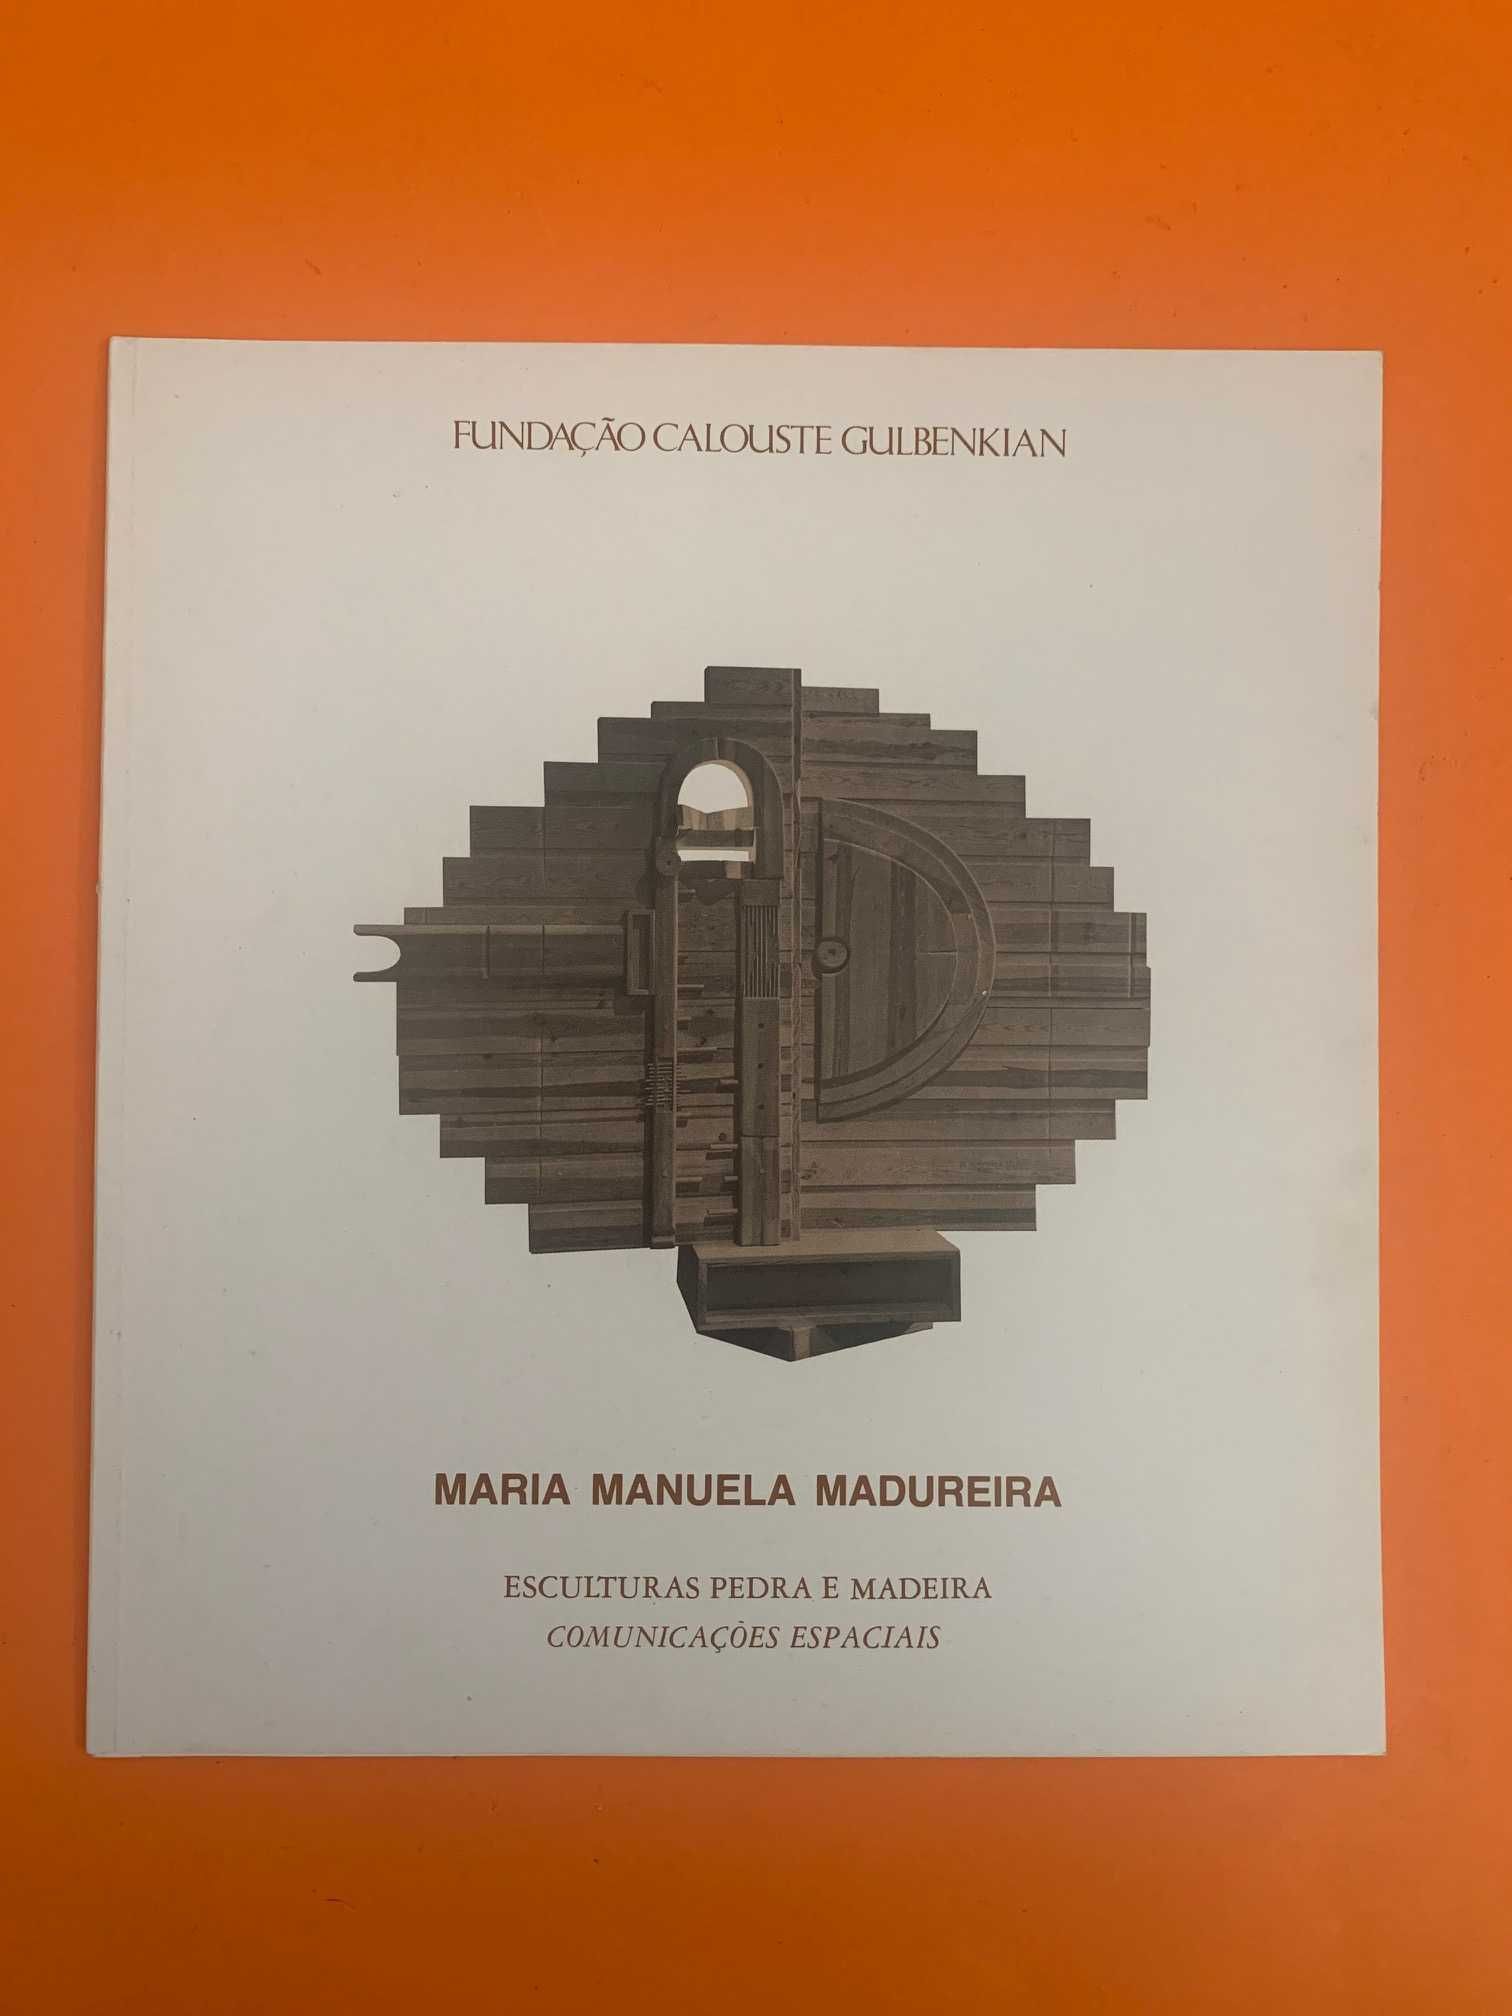 Maria Manuela Madureira: Esculturas, Pedras e Madeira